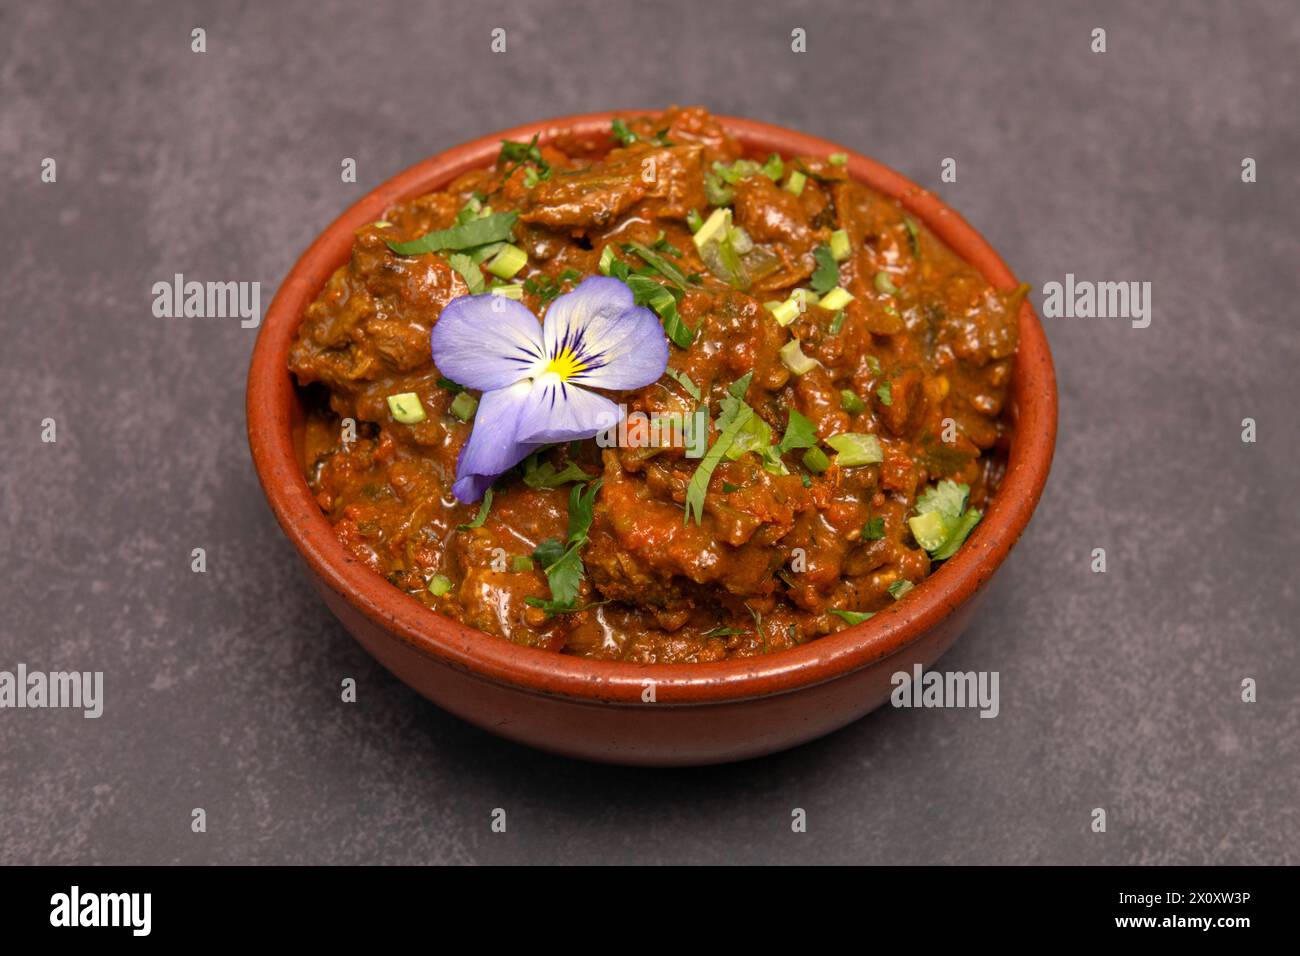 Sri Lankan food. Lamb curry Stock Photo